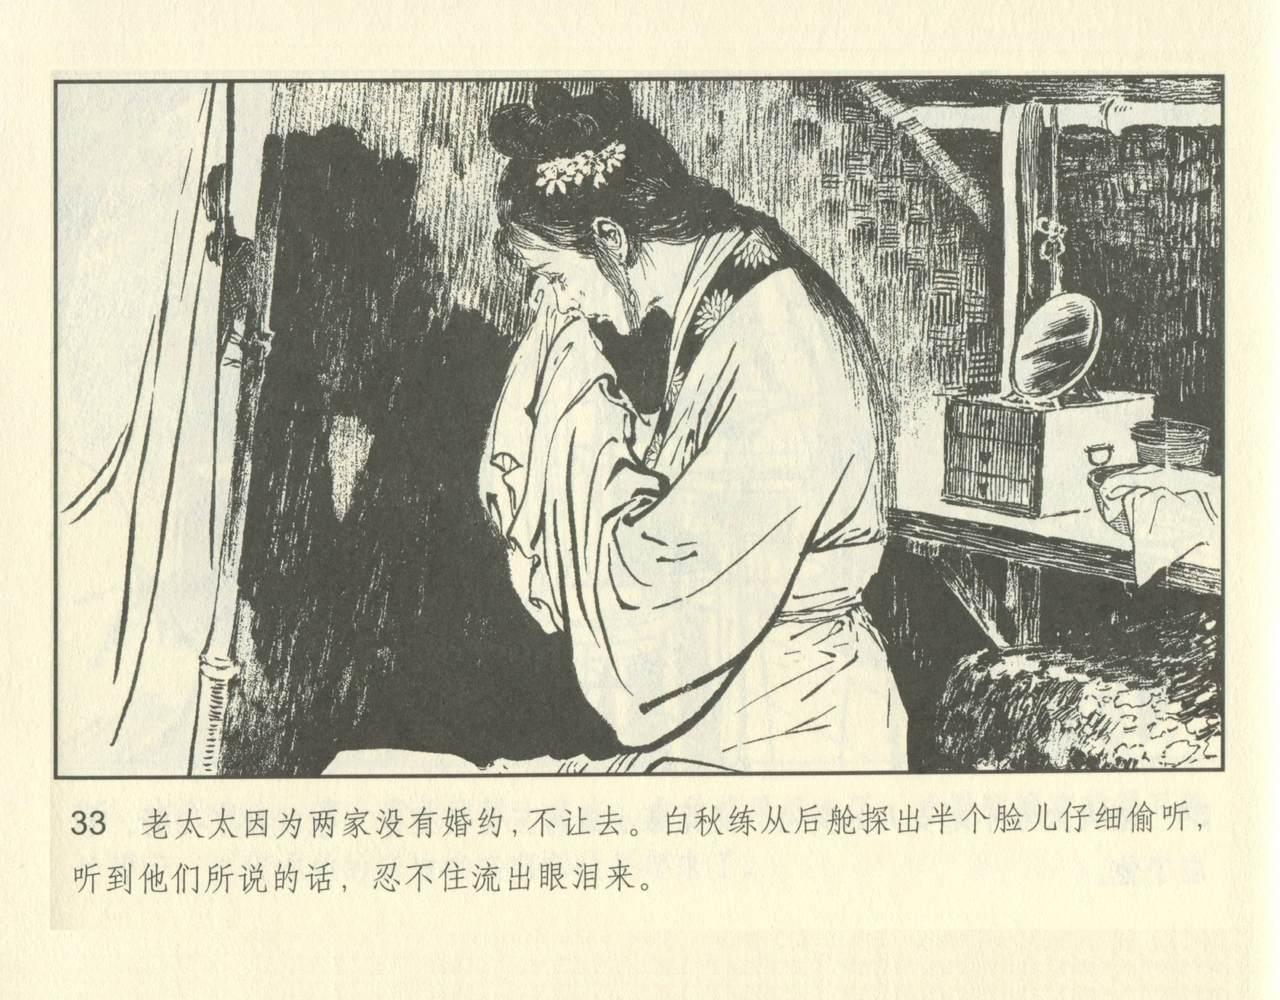 聊斋志异 张玮等绘 天津人民美术出版社 卷二十一 ~ 三十 82